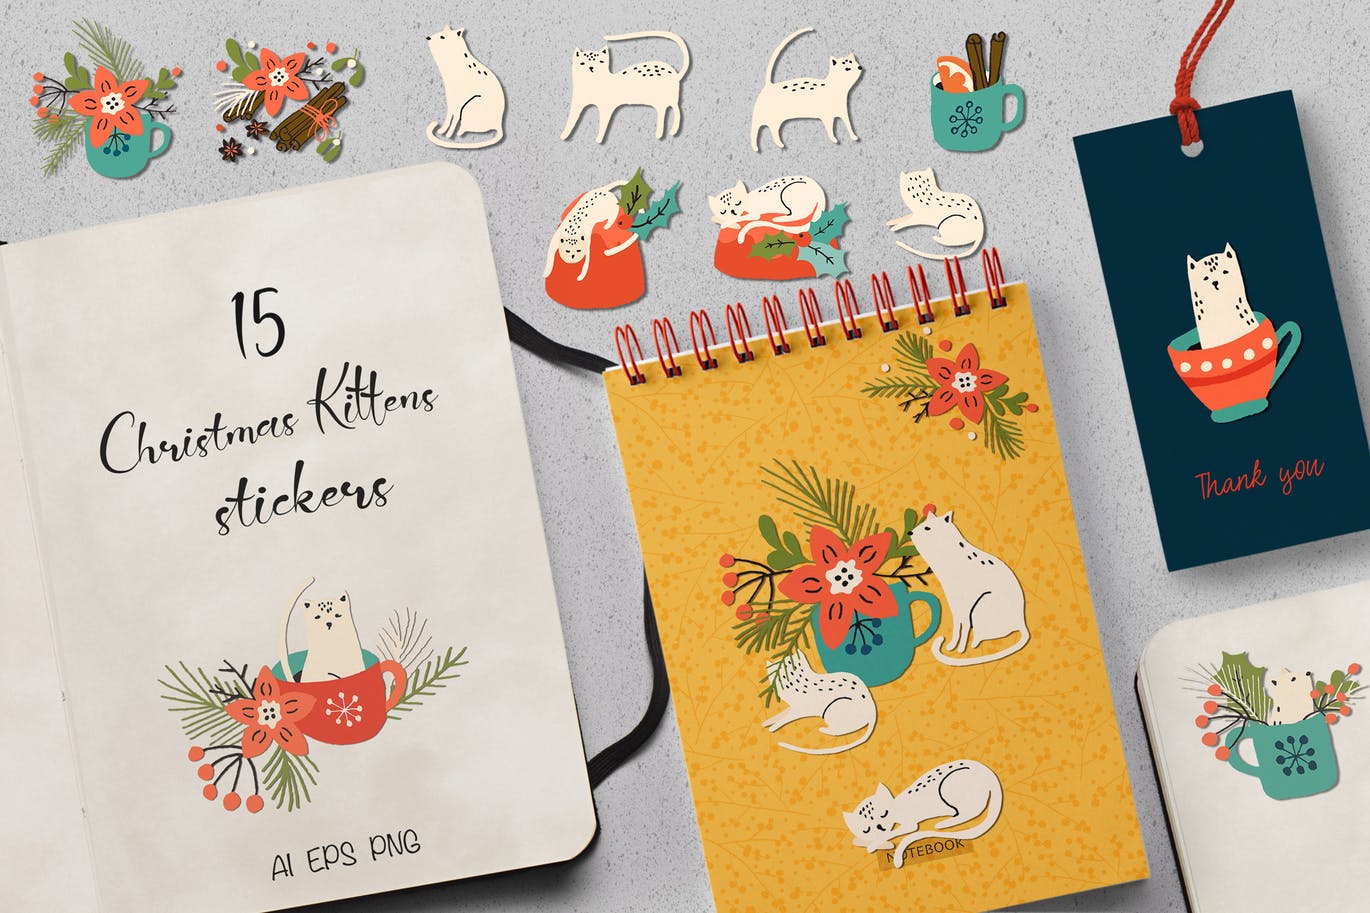 圣诞主题小猫动物贴纸/剪纸图案素材 Christmas Kittens Stickers插图